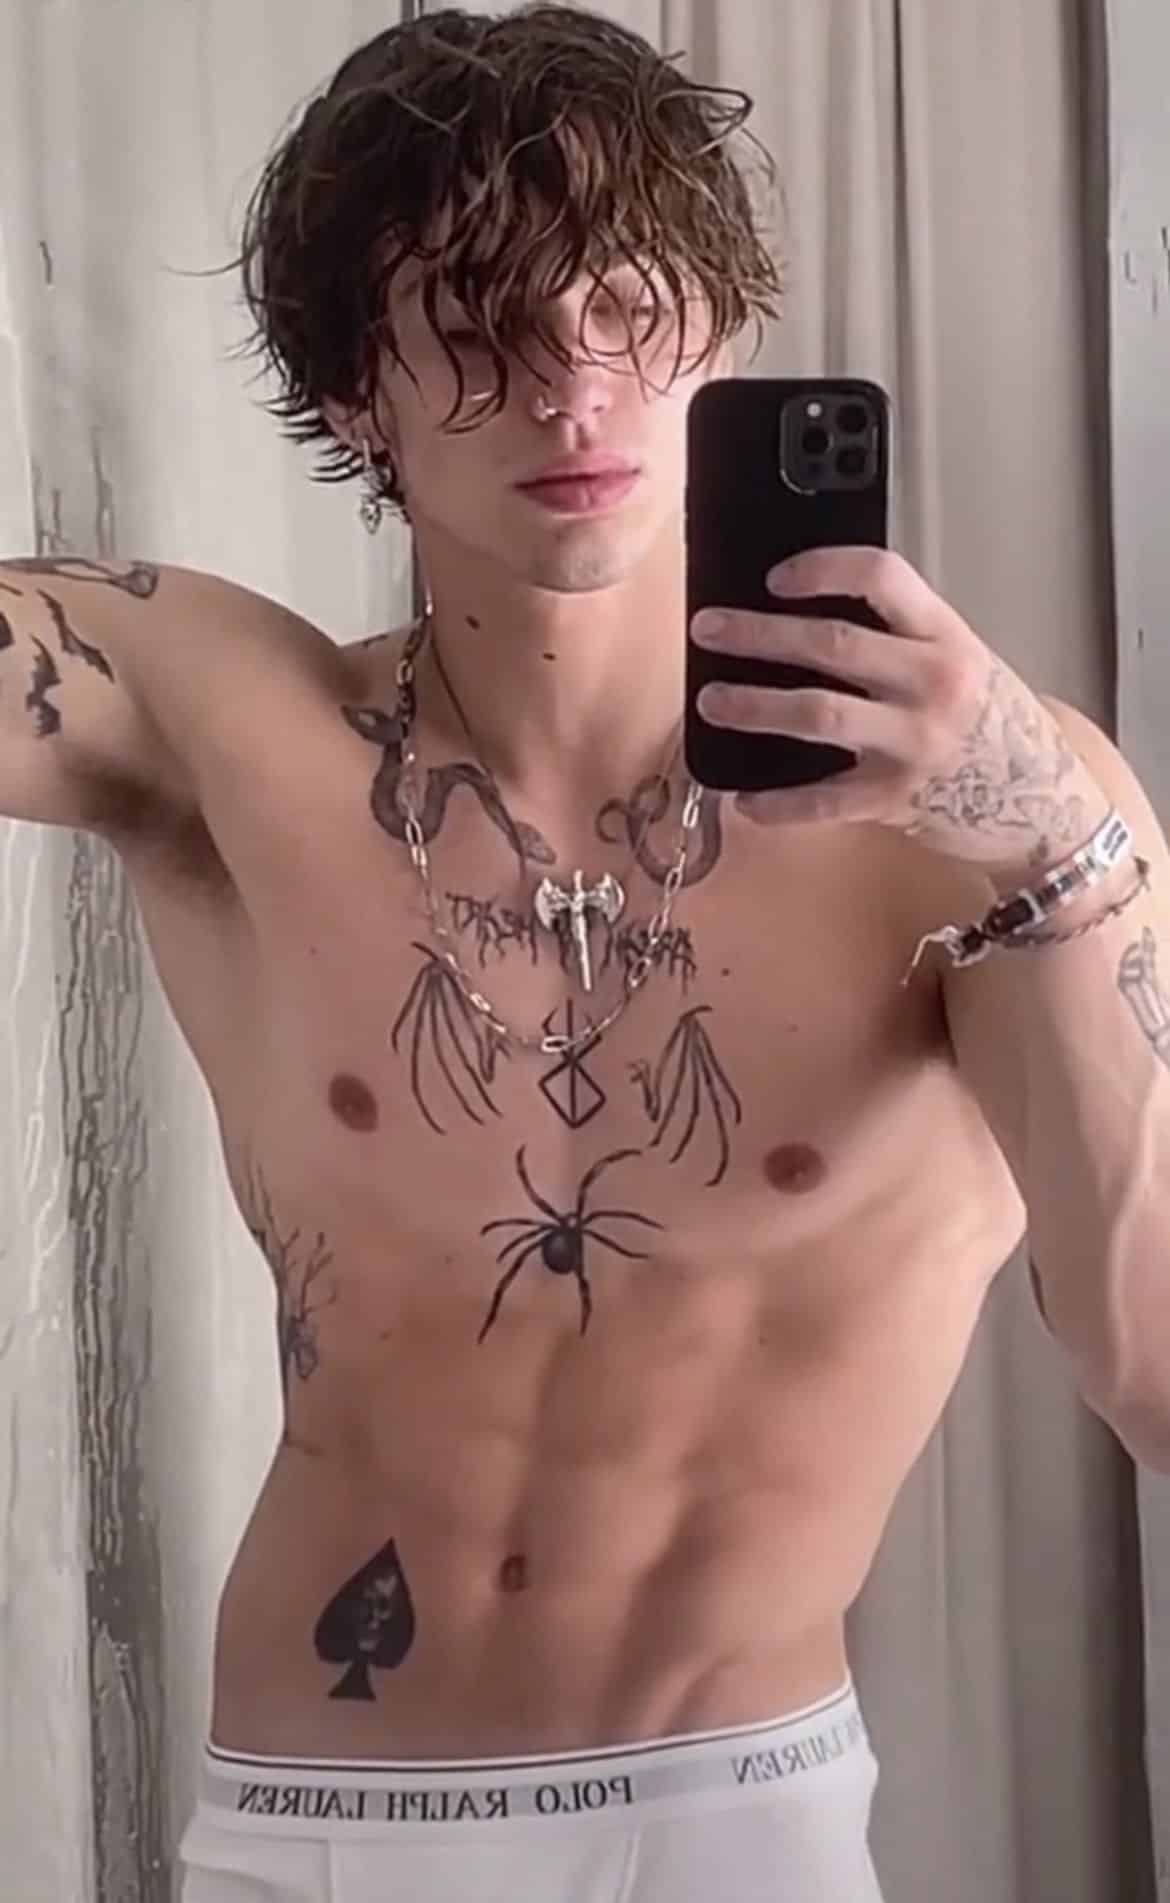 Vinnie hacker spider tattoo